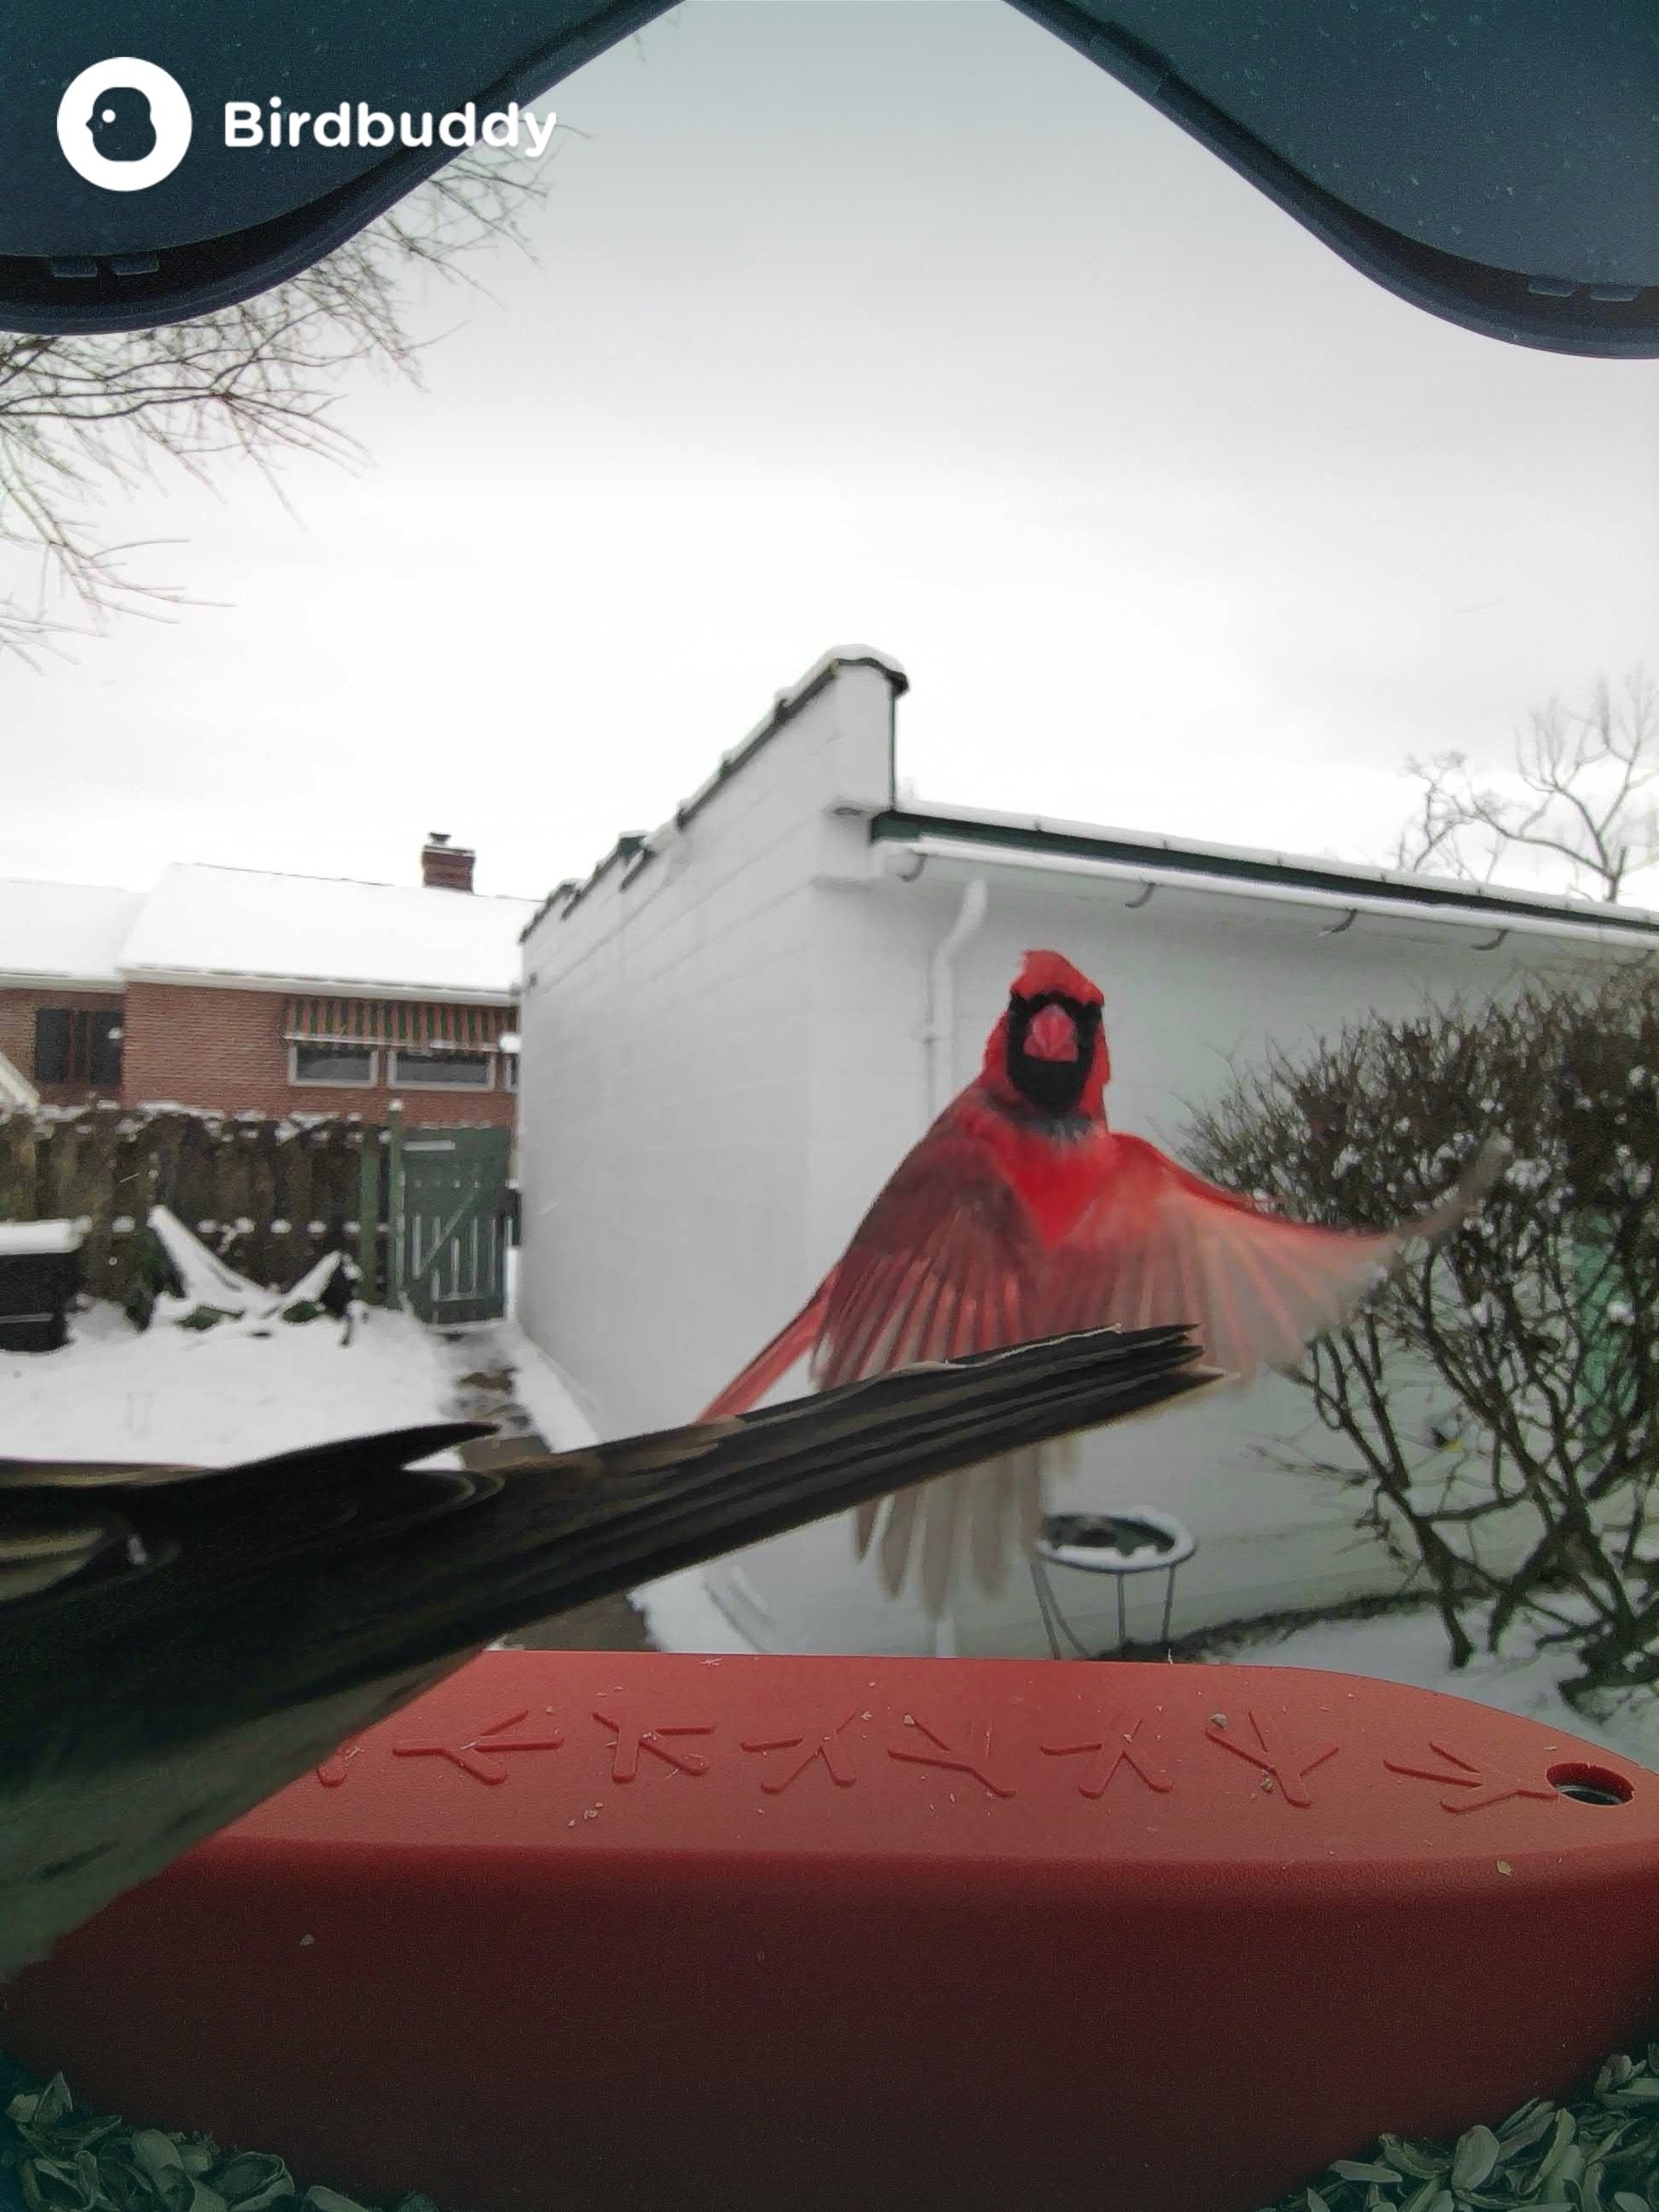 cardinal in flight in front of occupied birdfeeder